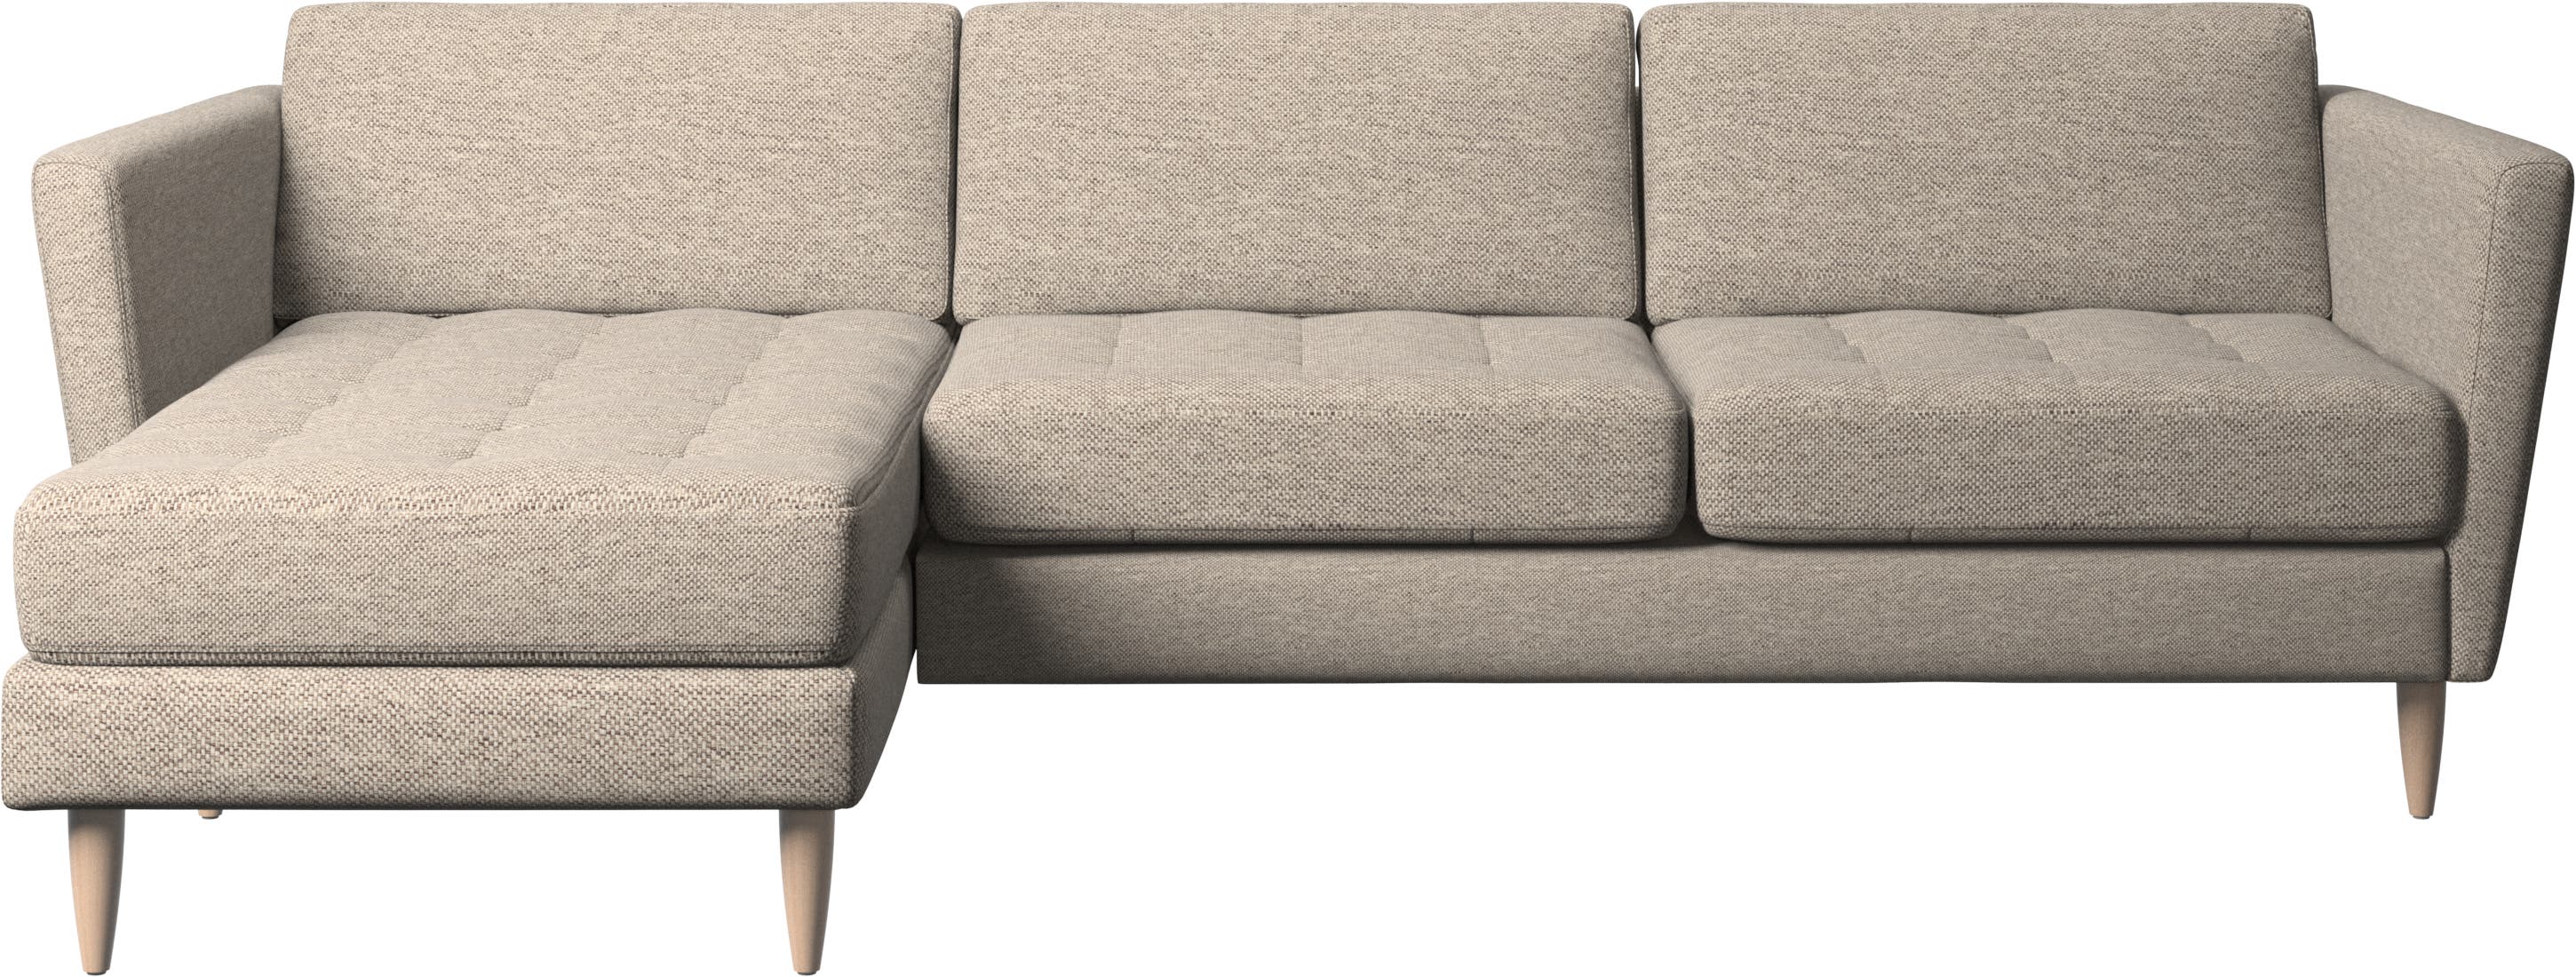 Osaka Sofa mit Ruhemodul, getuftete Sitzfläche